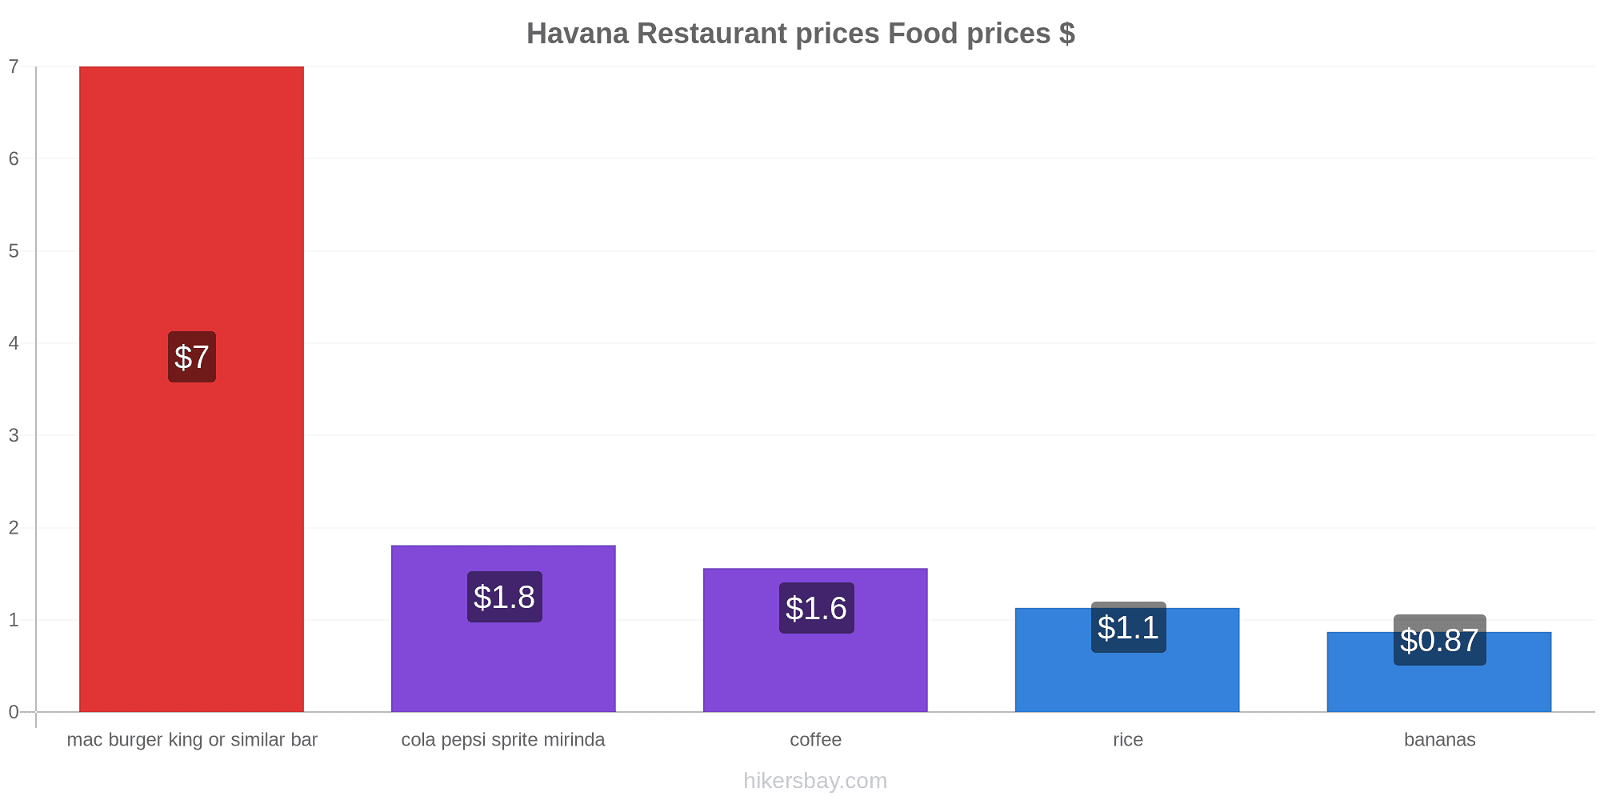 Havana price changes hikersbay.com